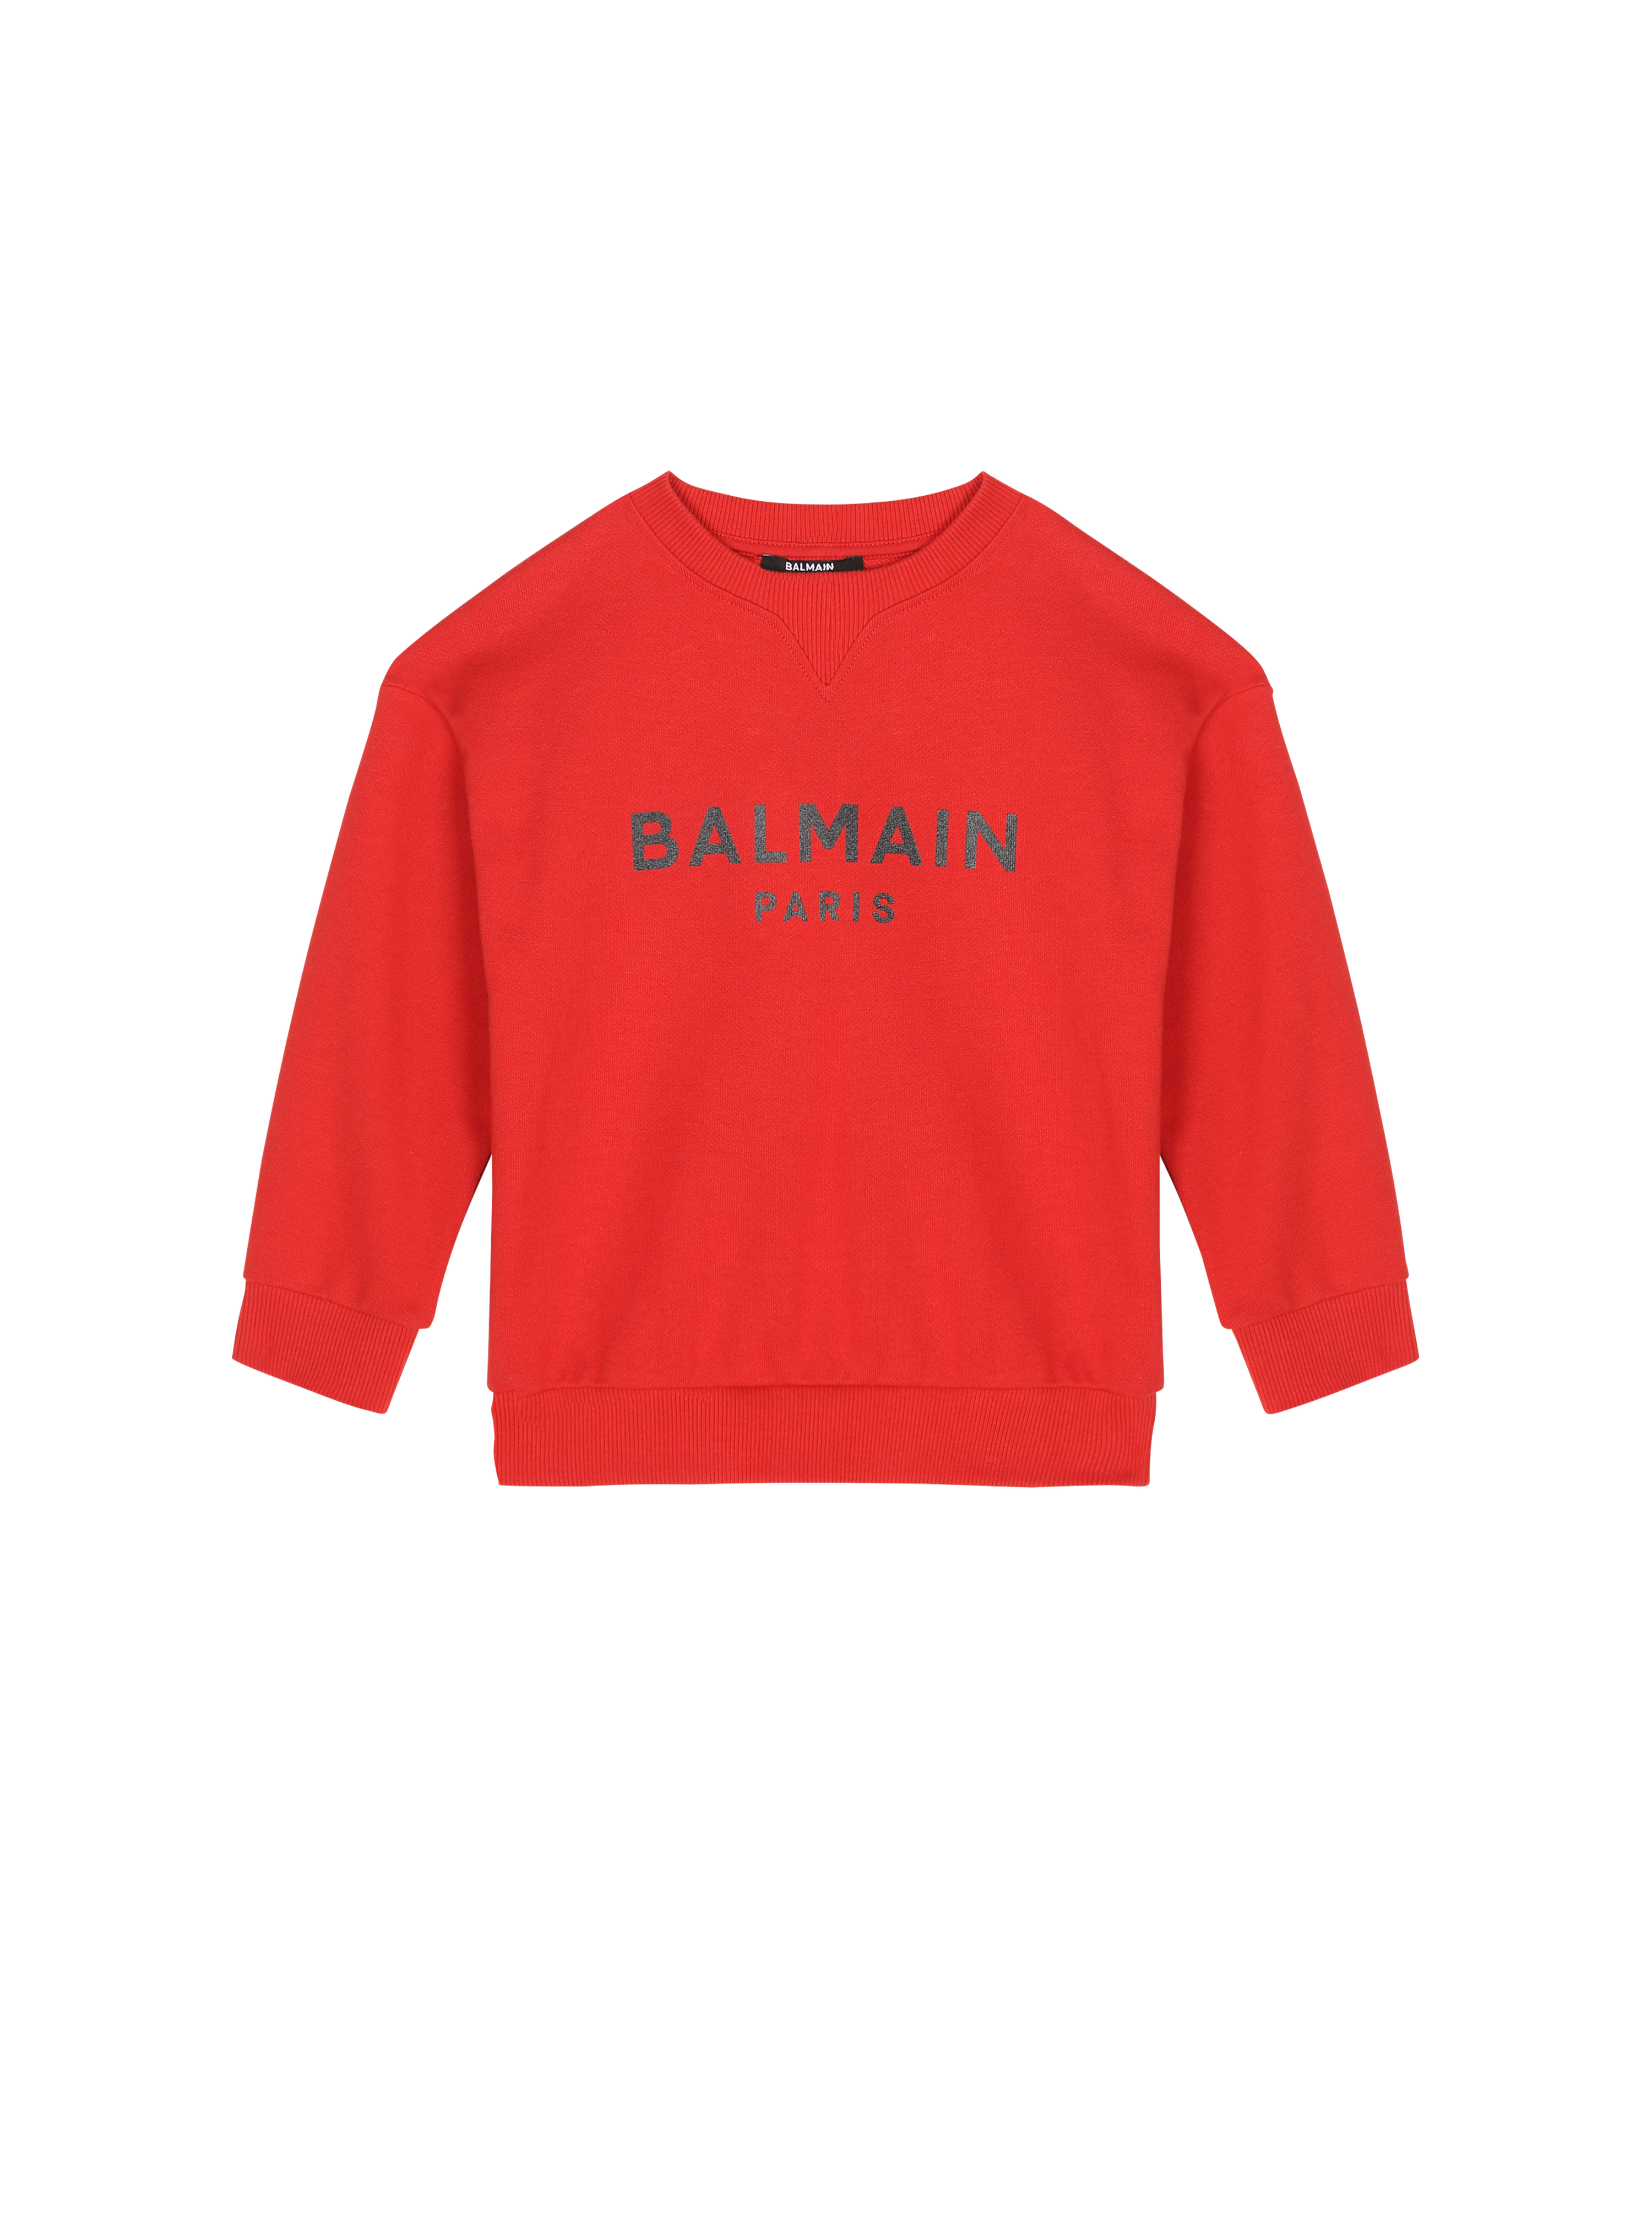 バルマンロゴ入りのコットン製セーター, 赤